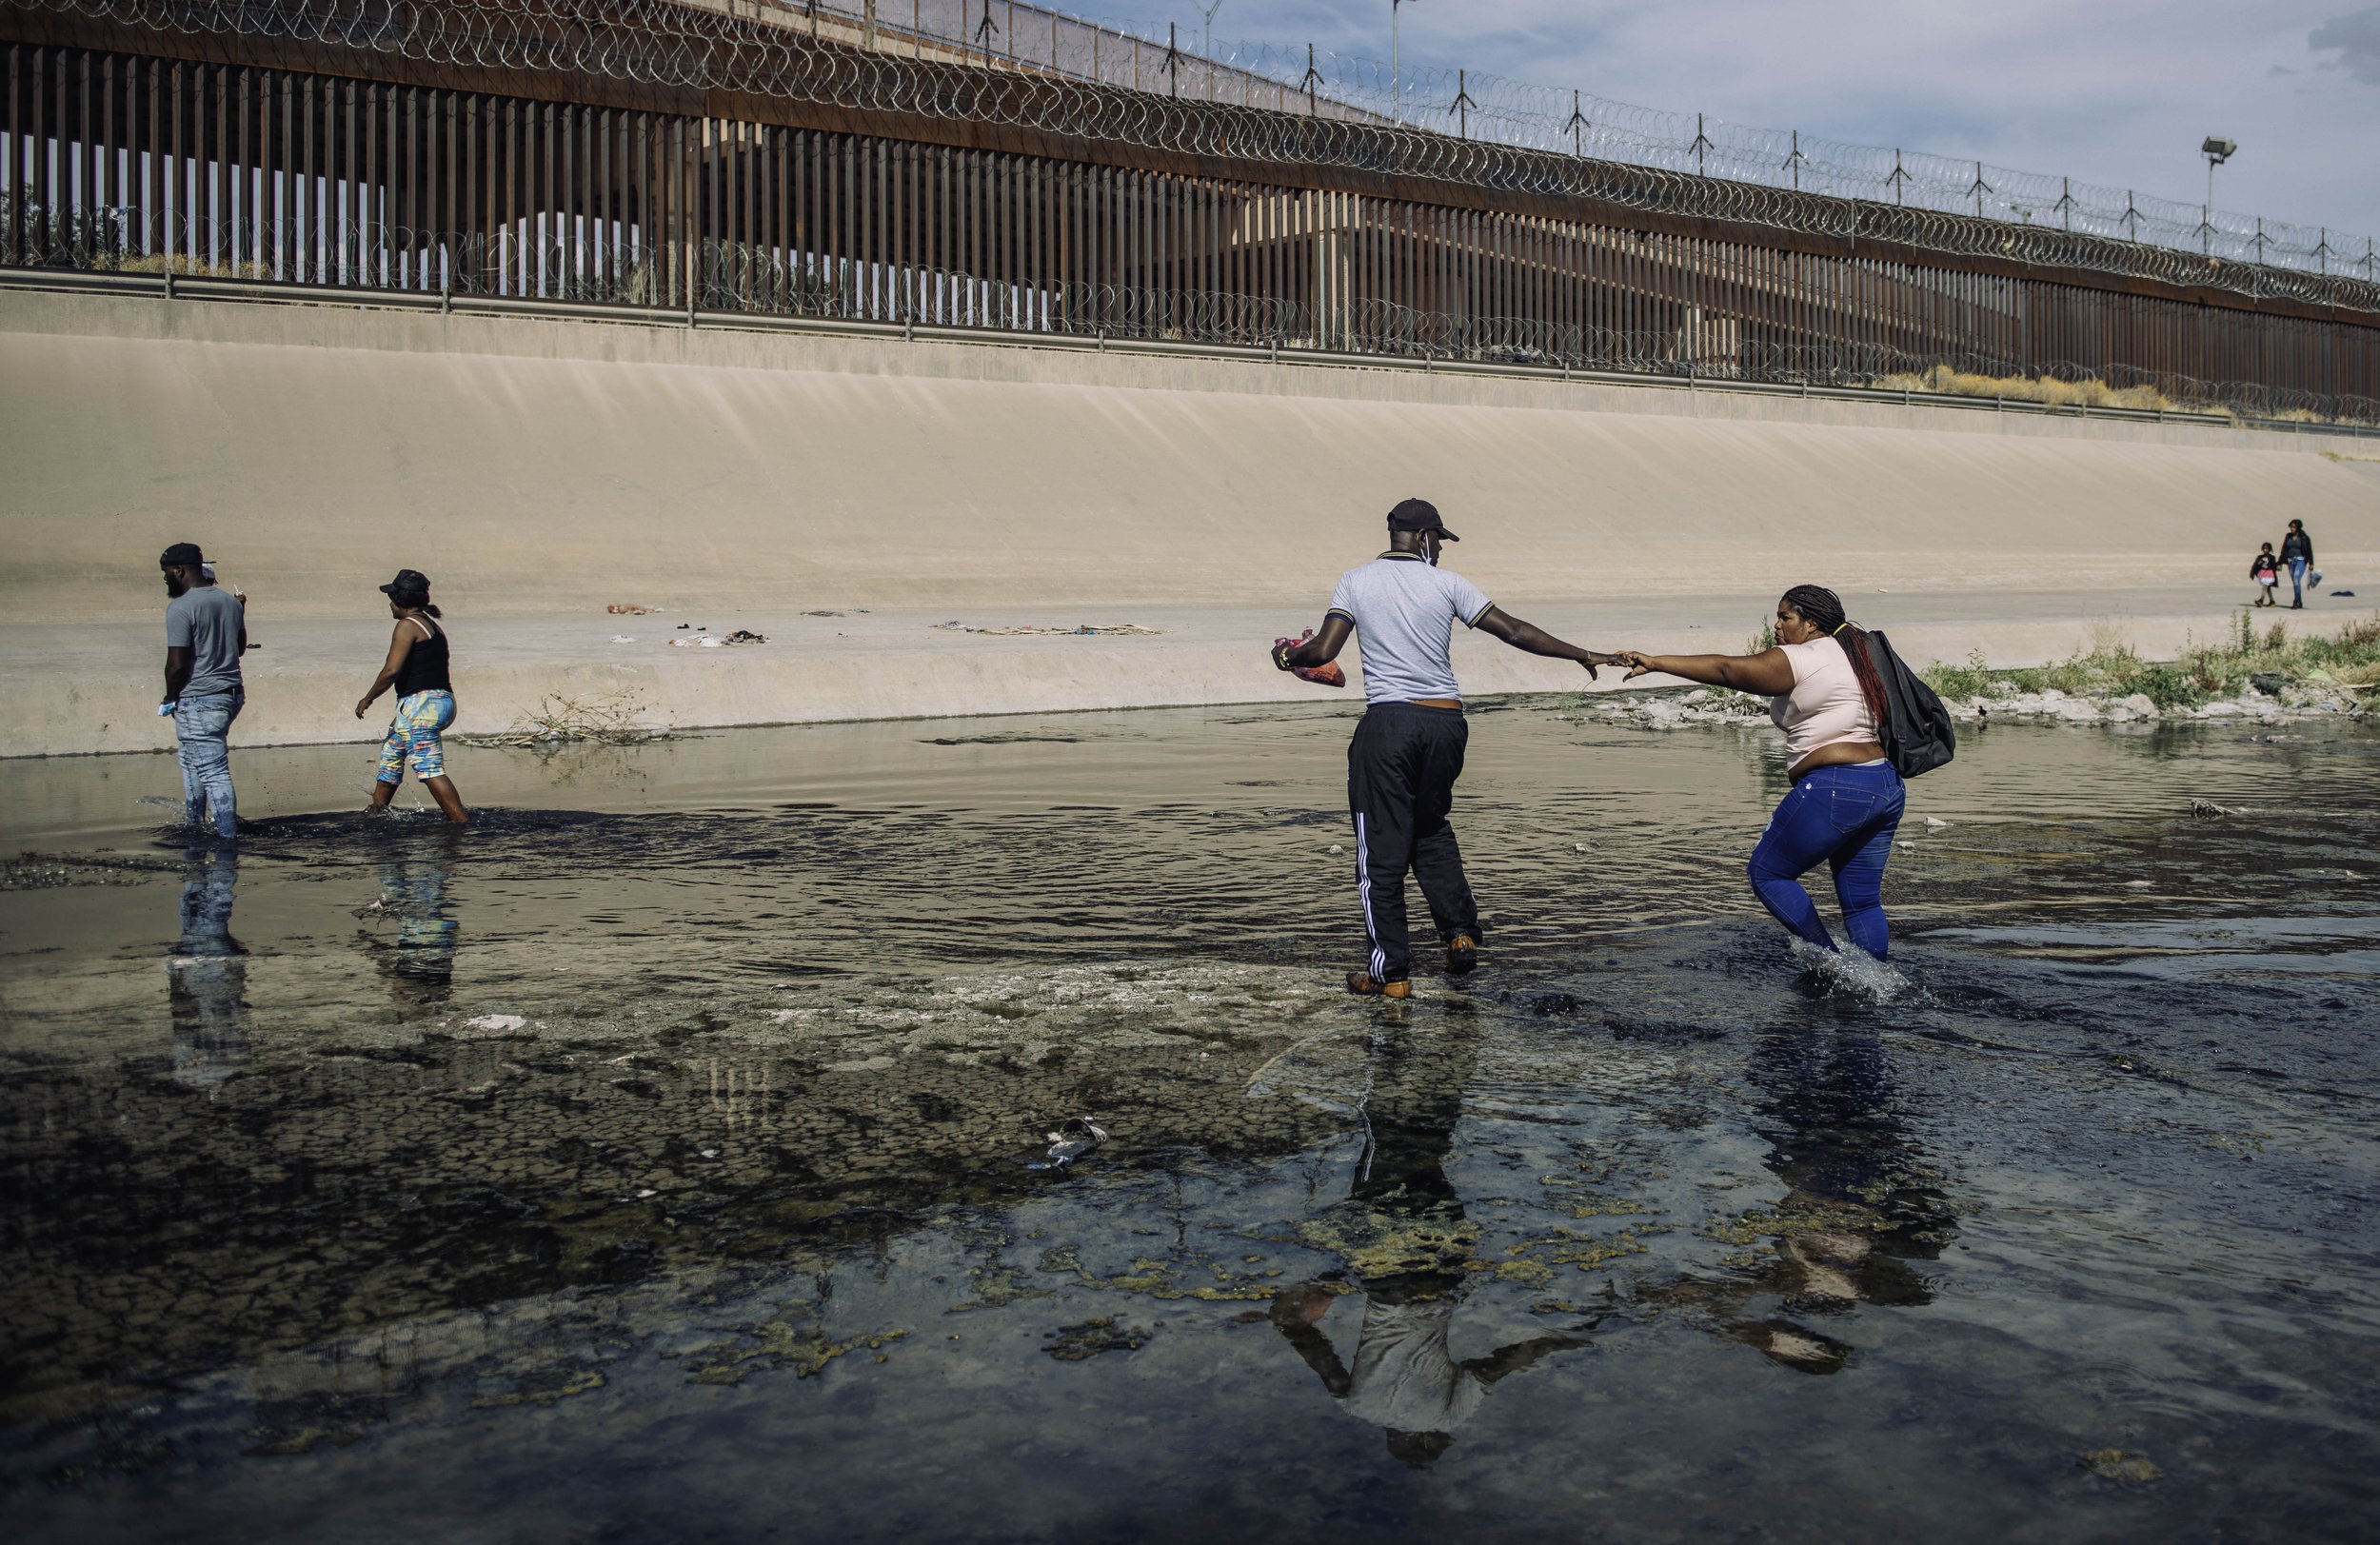 Hatian immigrants cross the Rio Grande from Ciudad Juárez, Mexico into El Paso, Texas